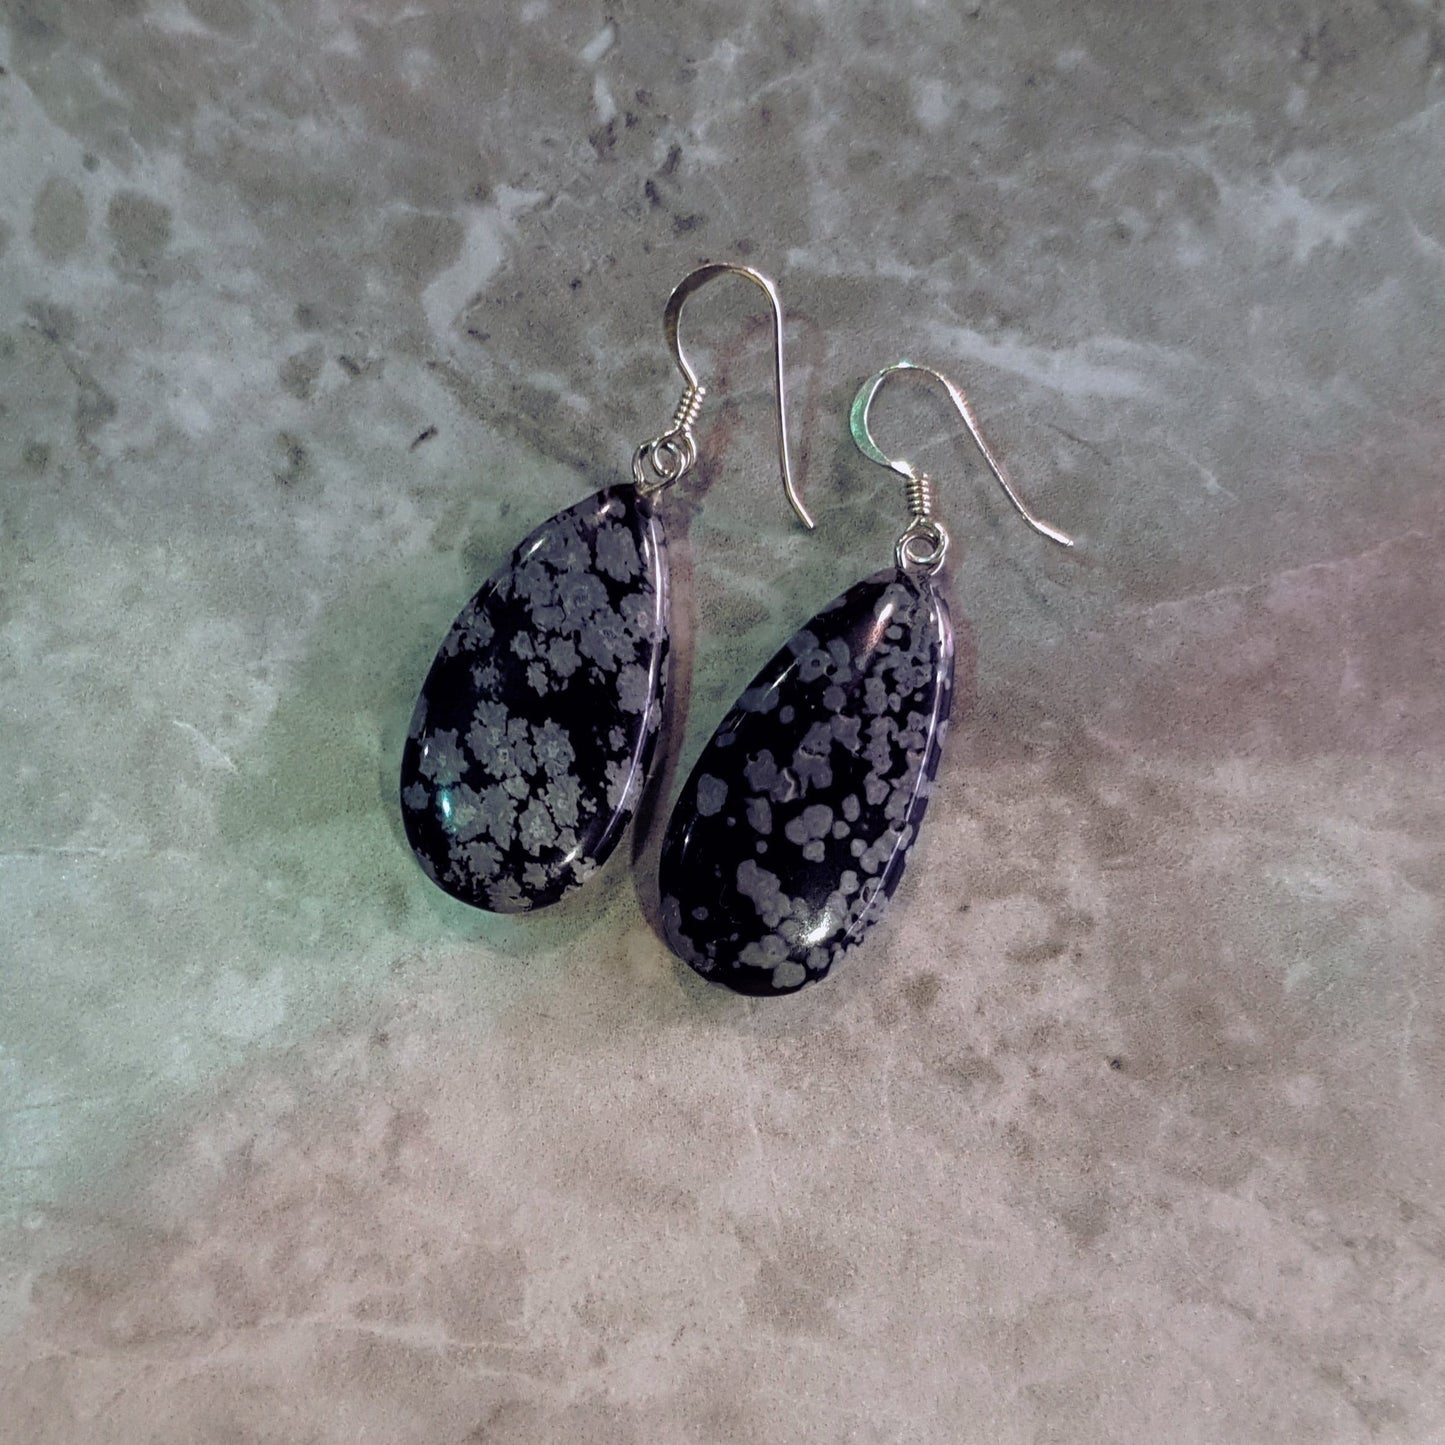 Snowflake Obsidian Earrings, Teardrop Sterling Silver Earrings, Gemstone Earrings | by nlanlaVictory-3